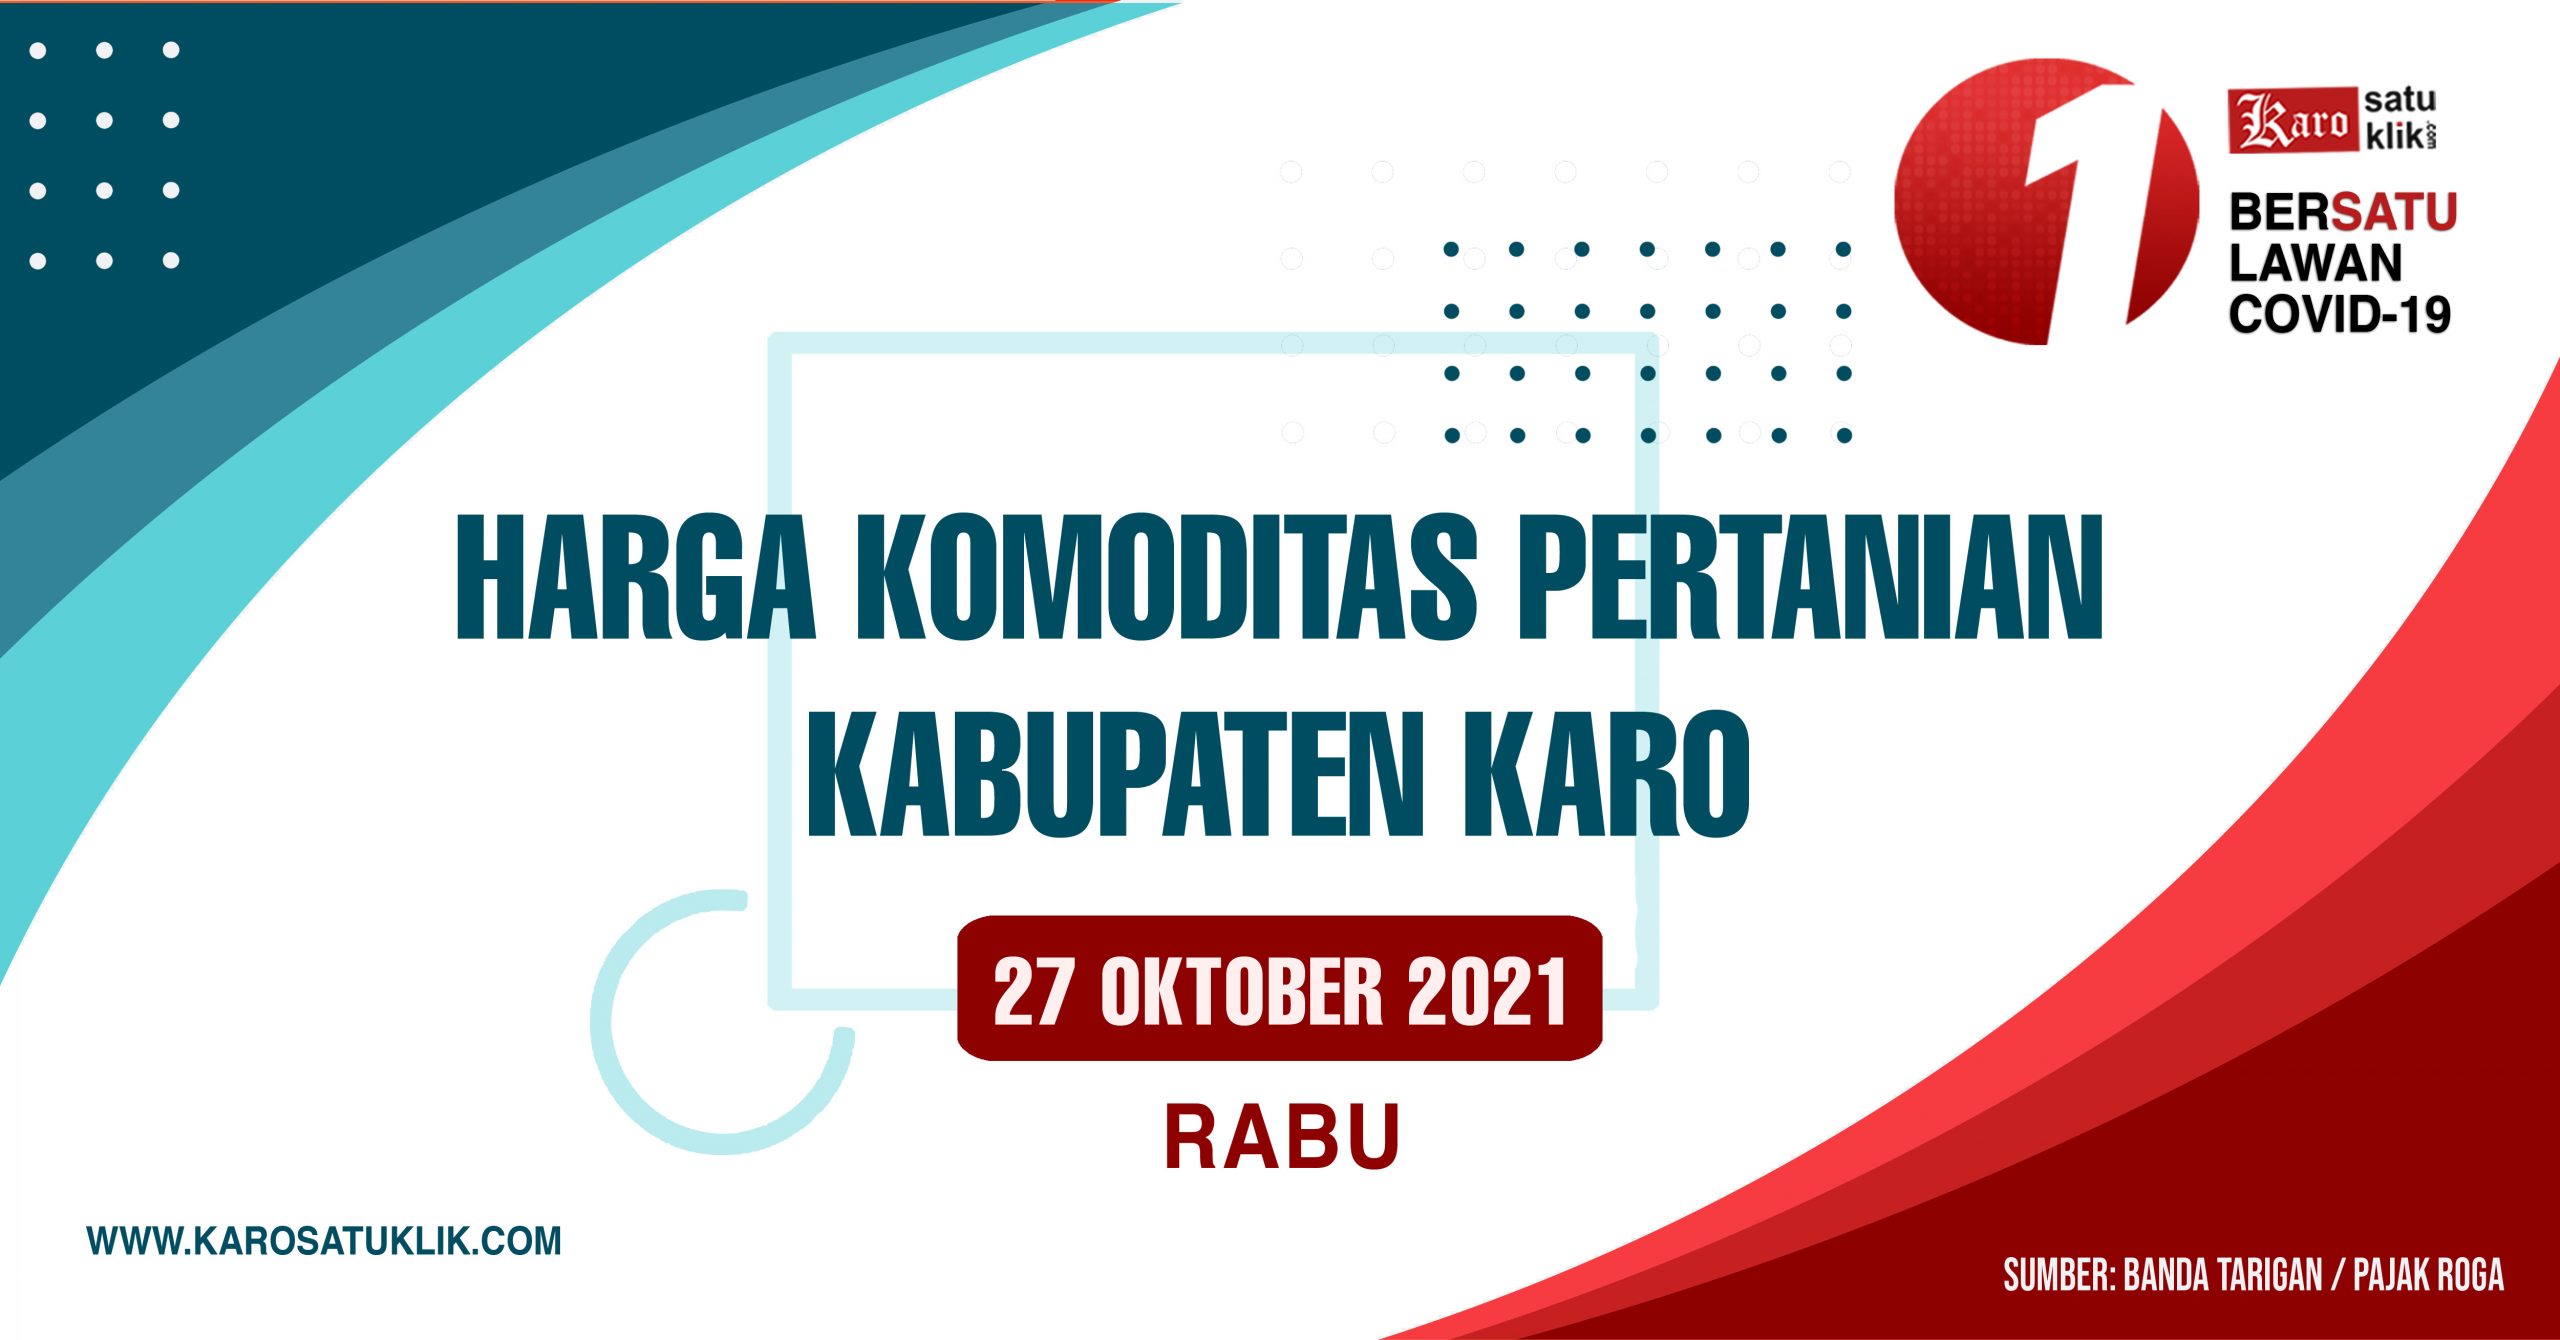 Daftar Harga Komoditas Pertanian Kabupaten Karo, 27 Oktober 2021